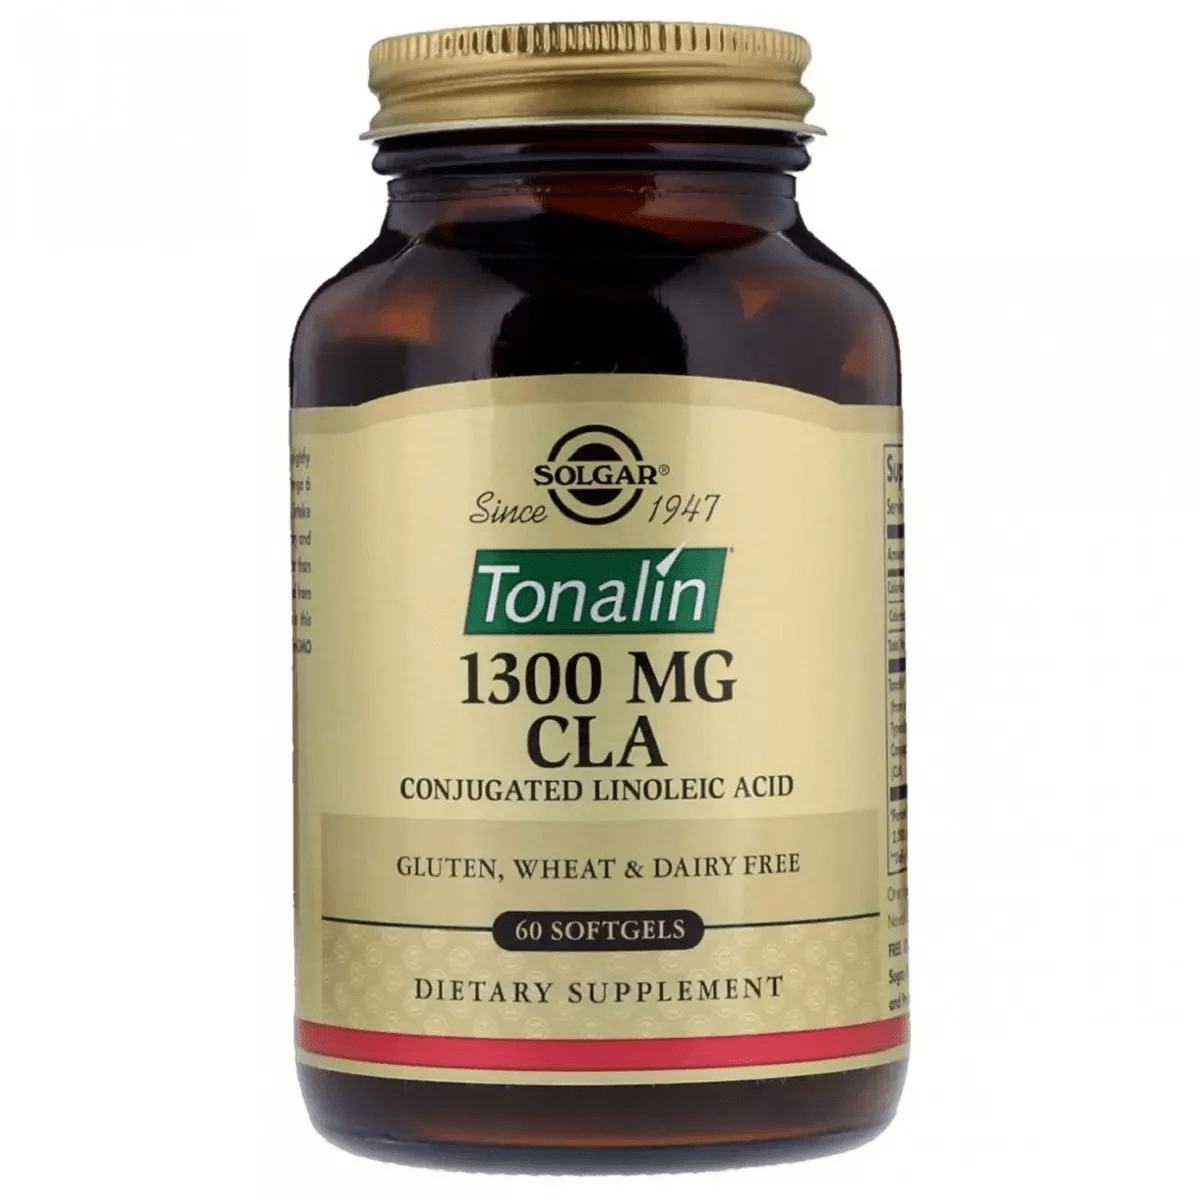 Конъюгированная линолевая кислота Solgar Tonalin CLA 1300 mg 60 Softgels,  мл, Solgar. Жиросжигатель. Снижение веса Сжигание жира 